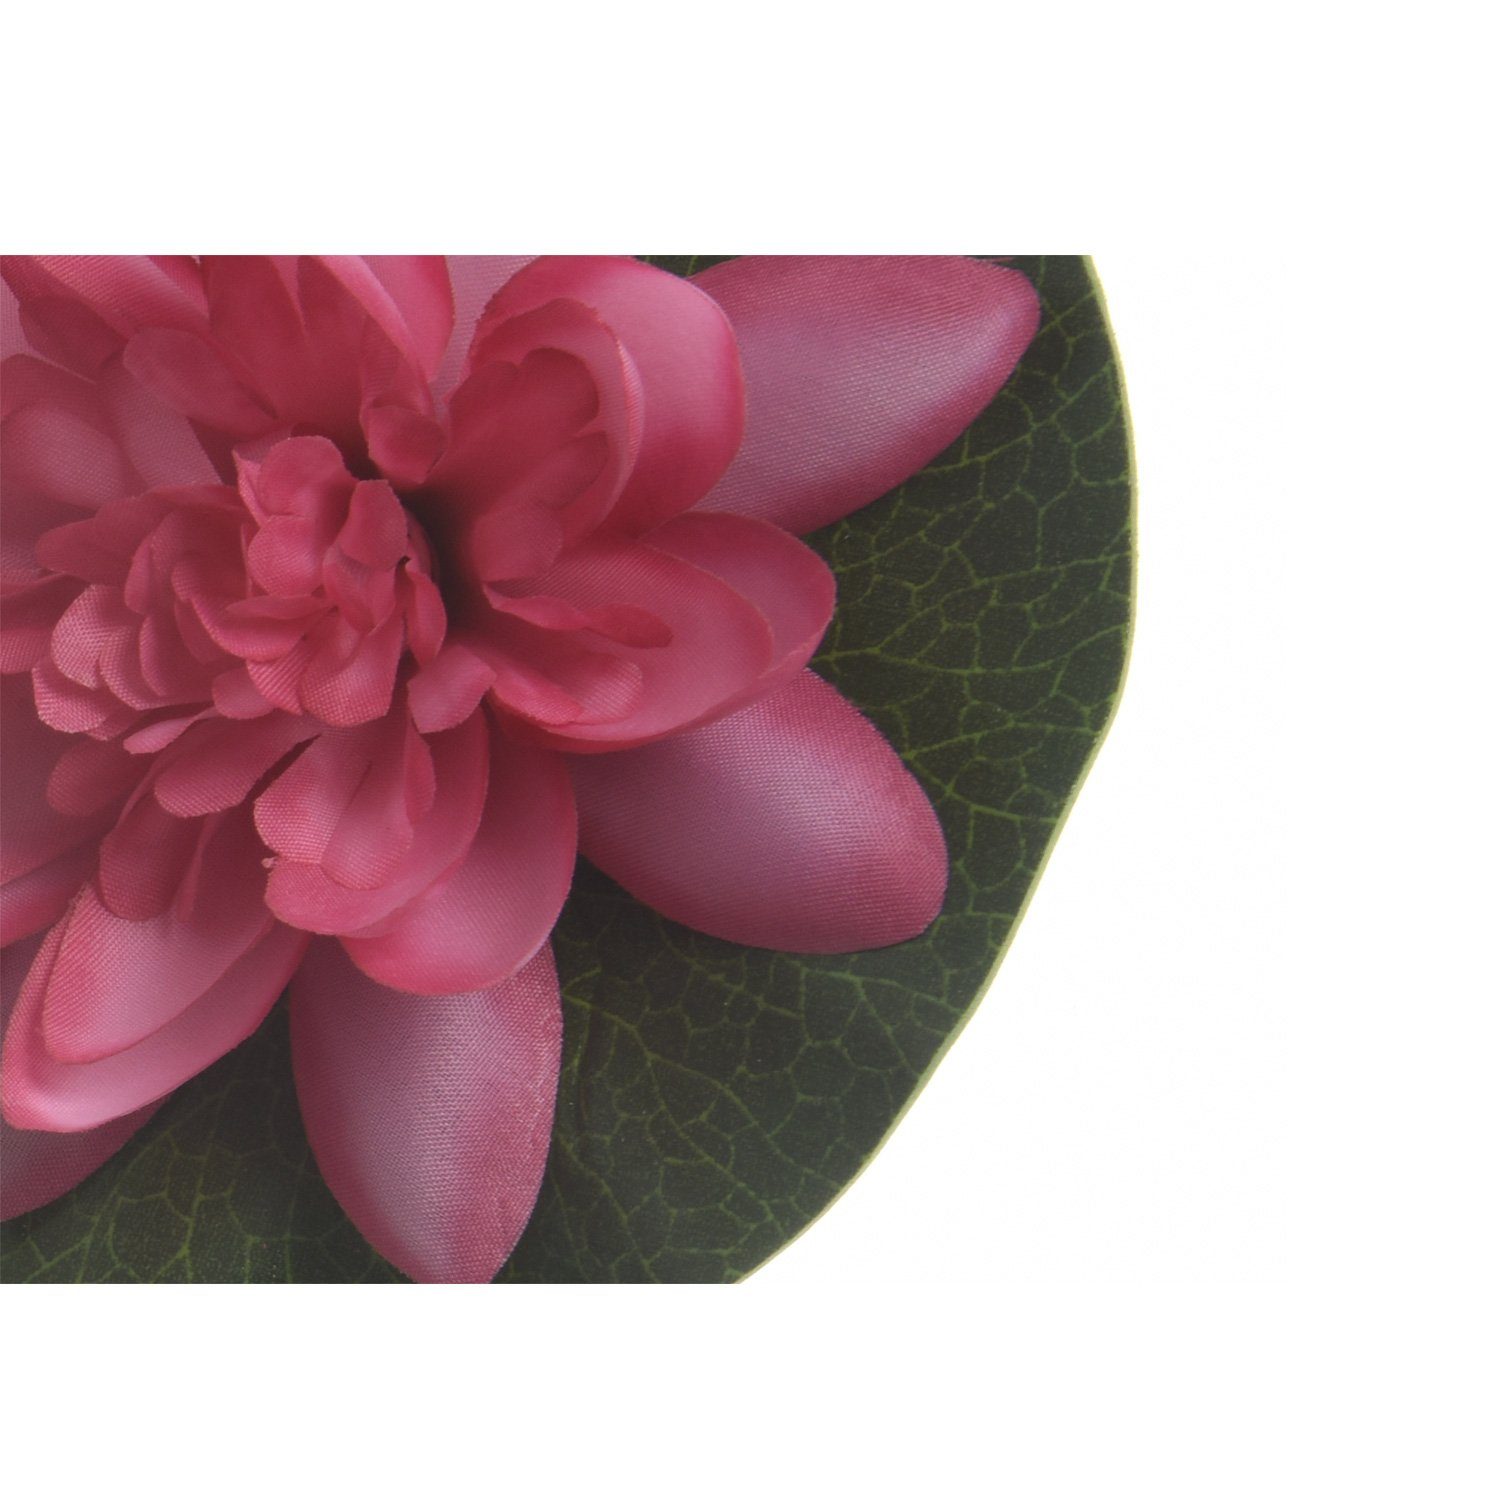 Höhe Teichblume 4 MARELIDA, Kunstblume Lotusblume cm Lotusblüte D: Seerose Kunstblume schwimmend, 13cm